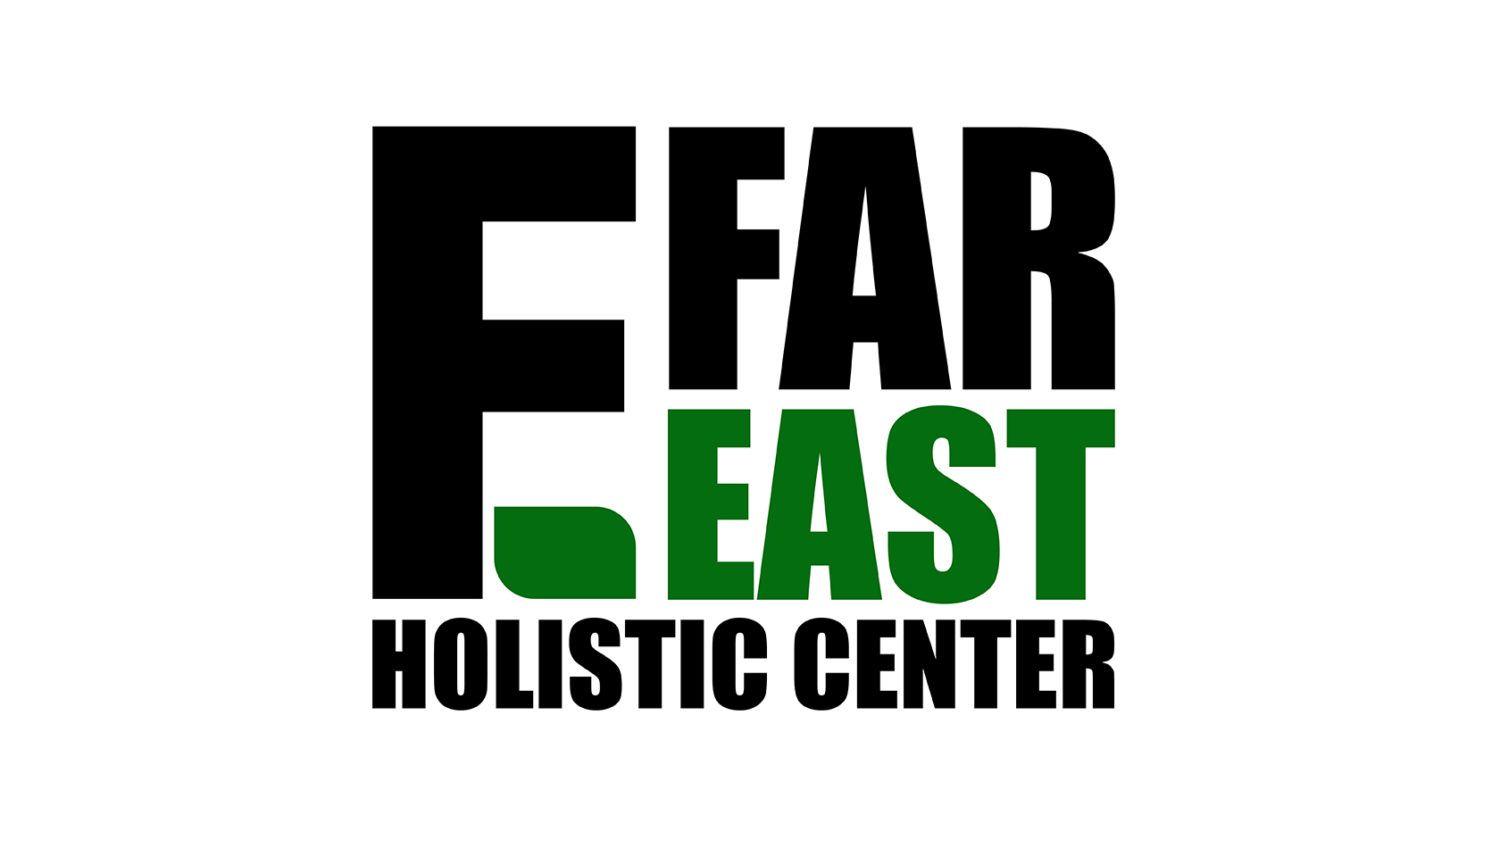 East Logo - Far East Logo | Make Media